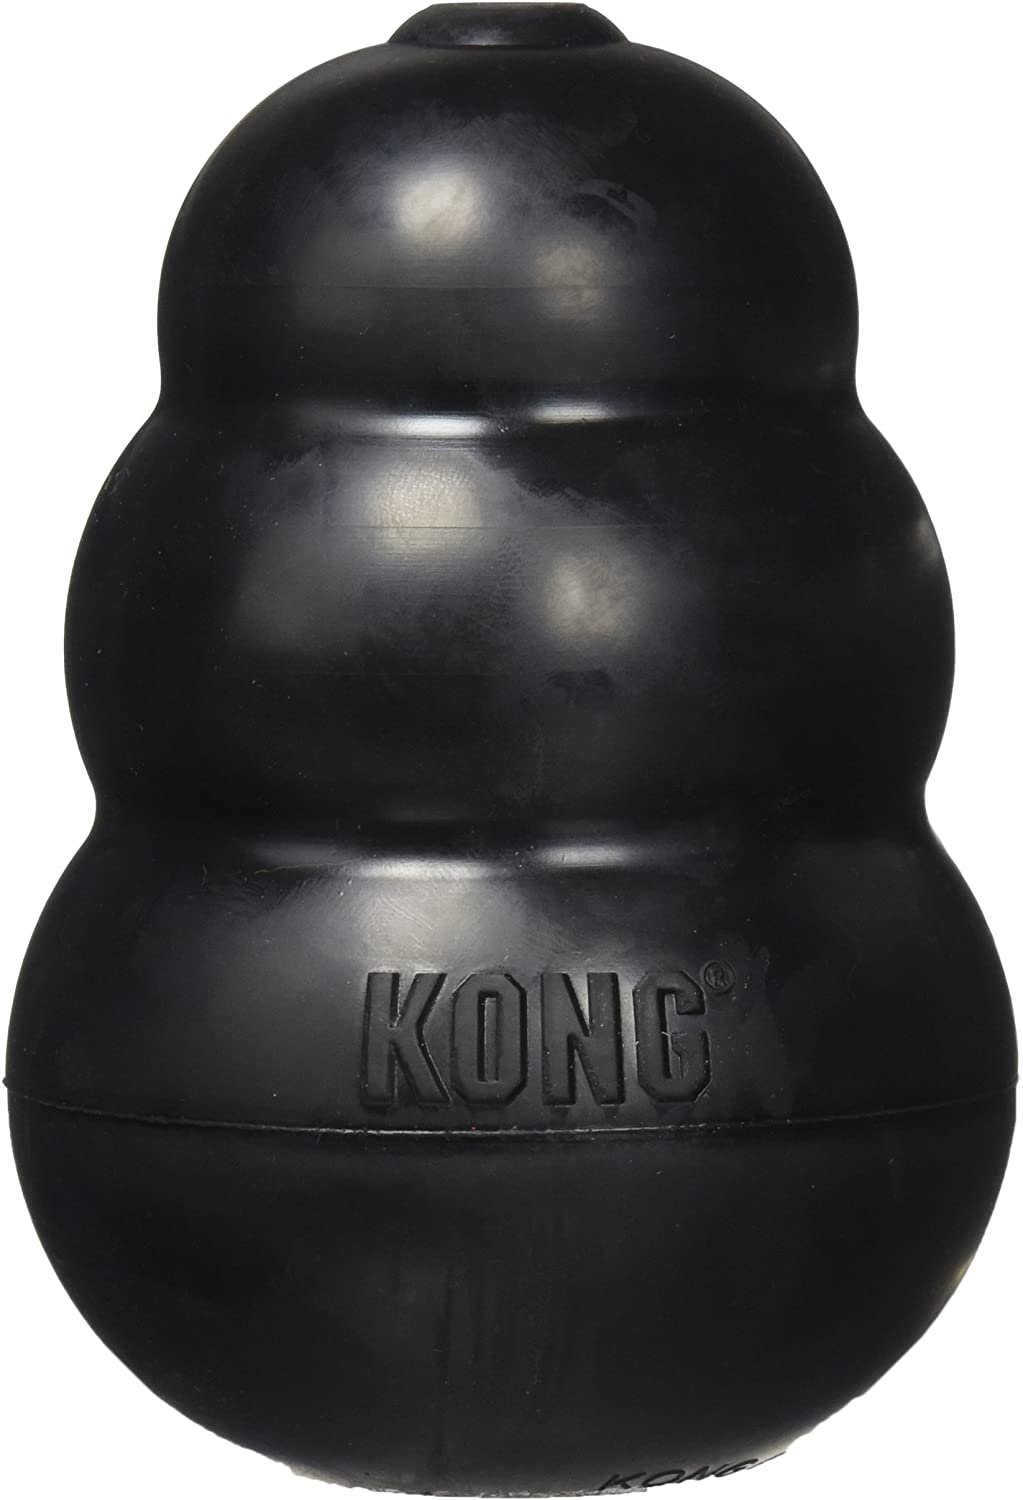 Kong Extreme Large Dog Toy